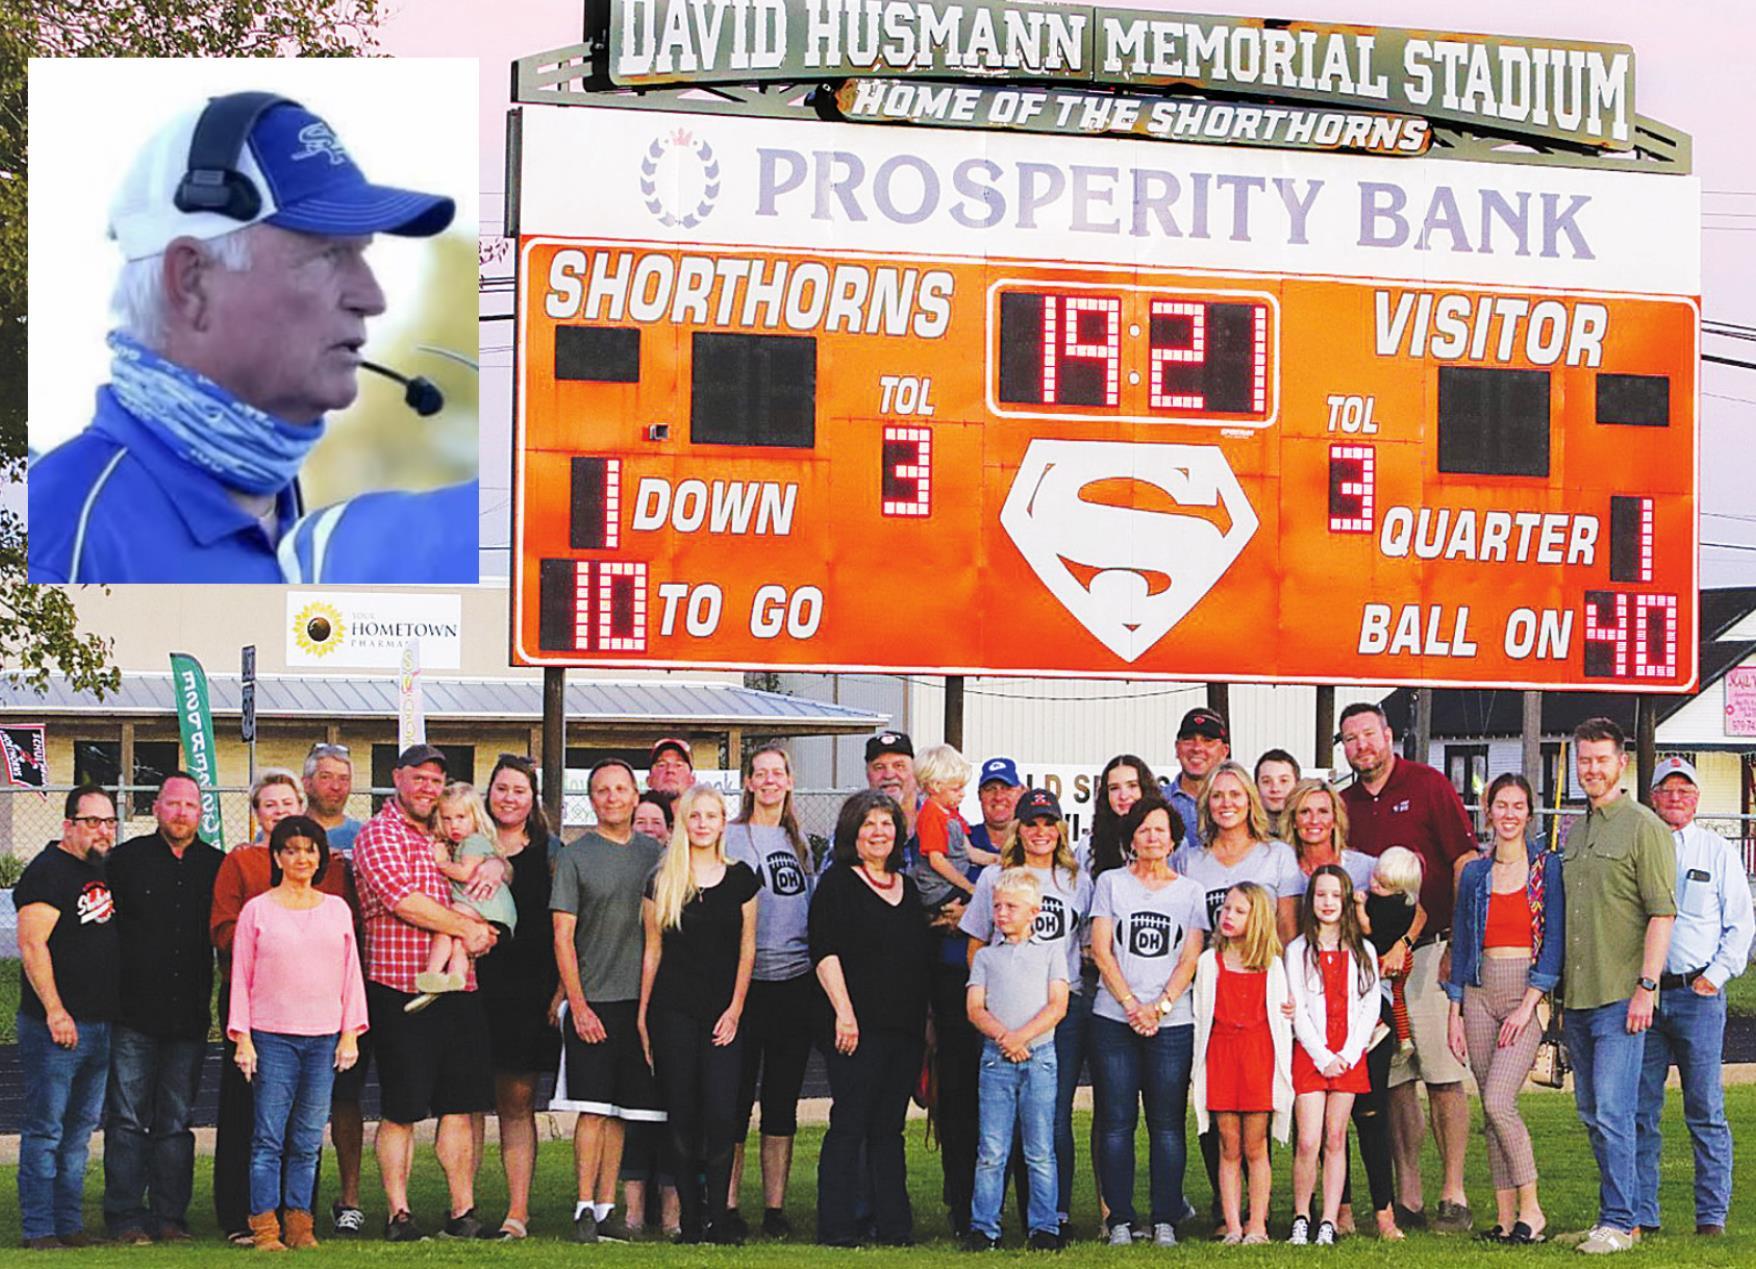 Schulenburg ISD officialy names stadium David Husmann Memorial Stadium